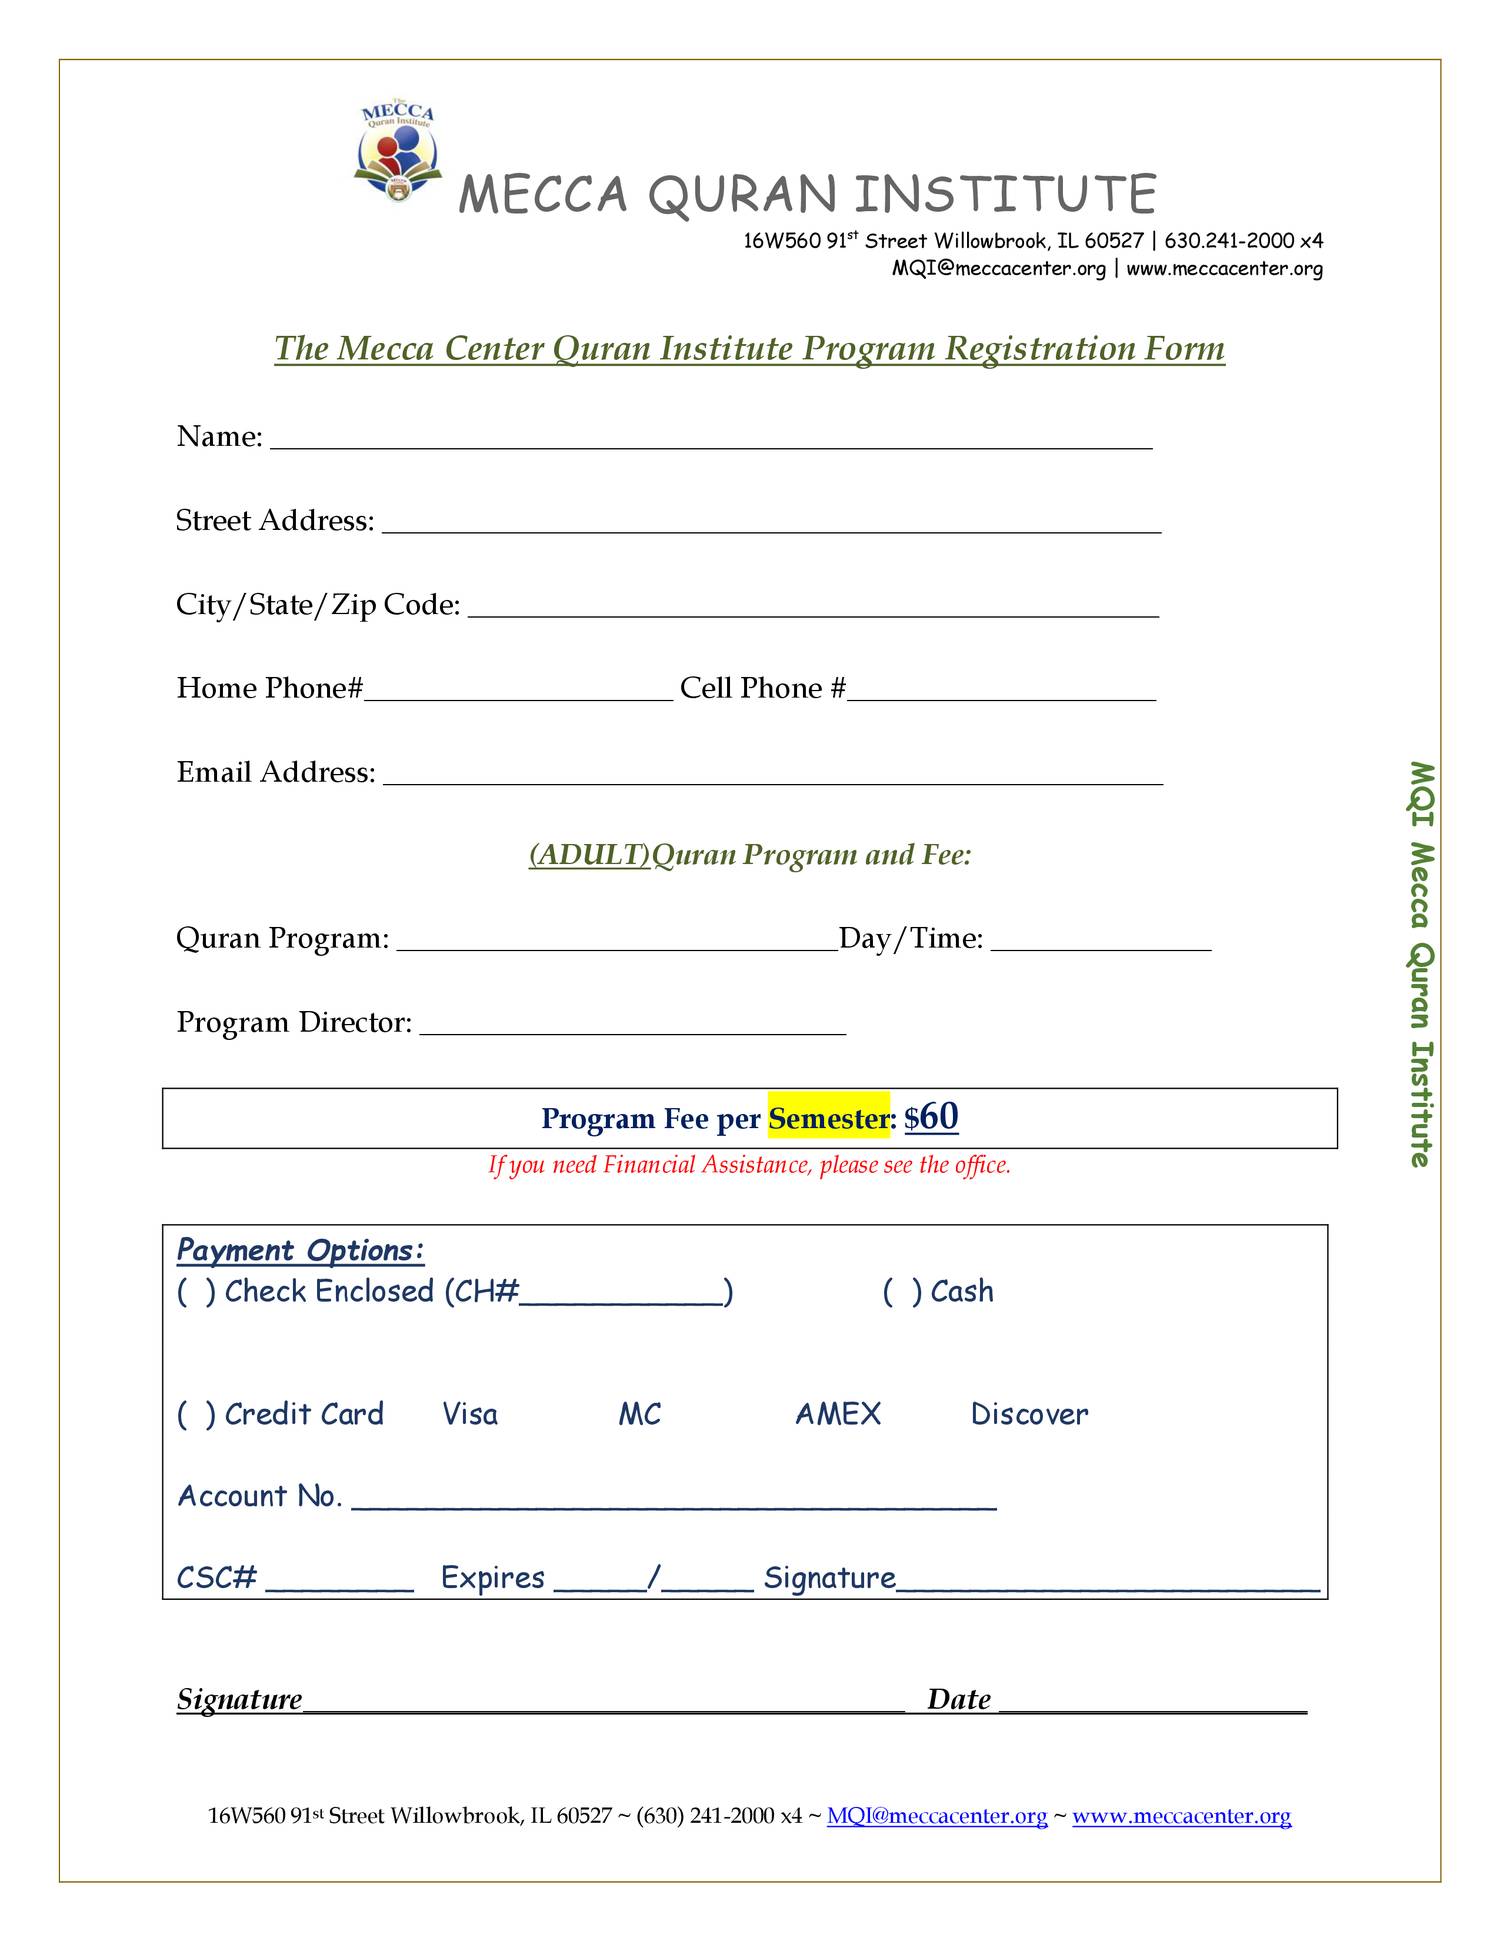 Mecca Quran Institute: 2019Registration Form doc DocDroid